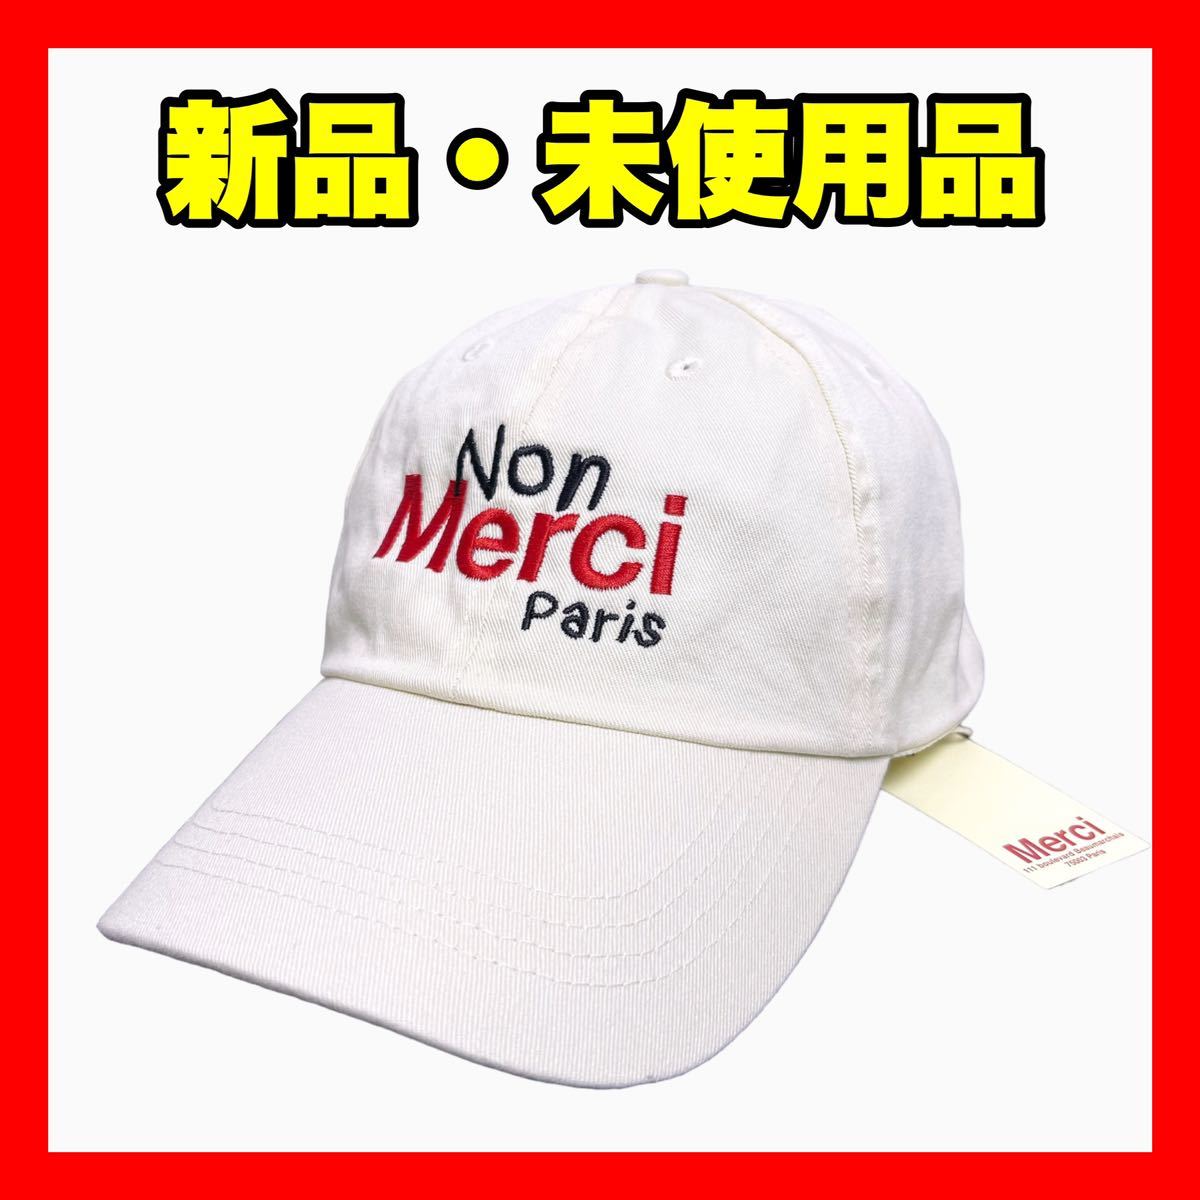 新品【merci】ノン メルシー パリ POP UP 限定... - ヤフオク!